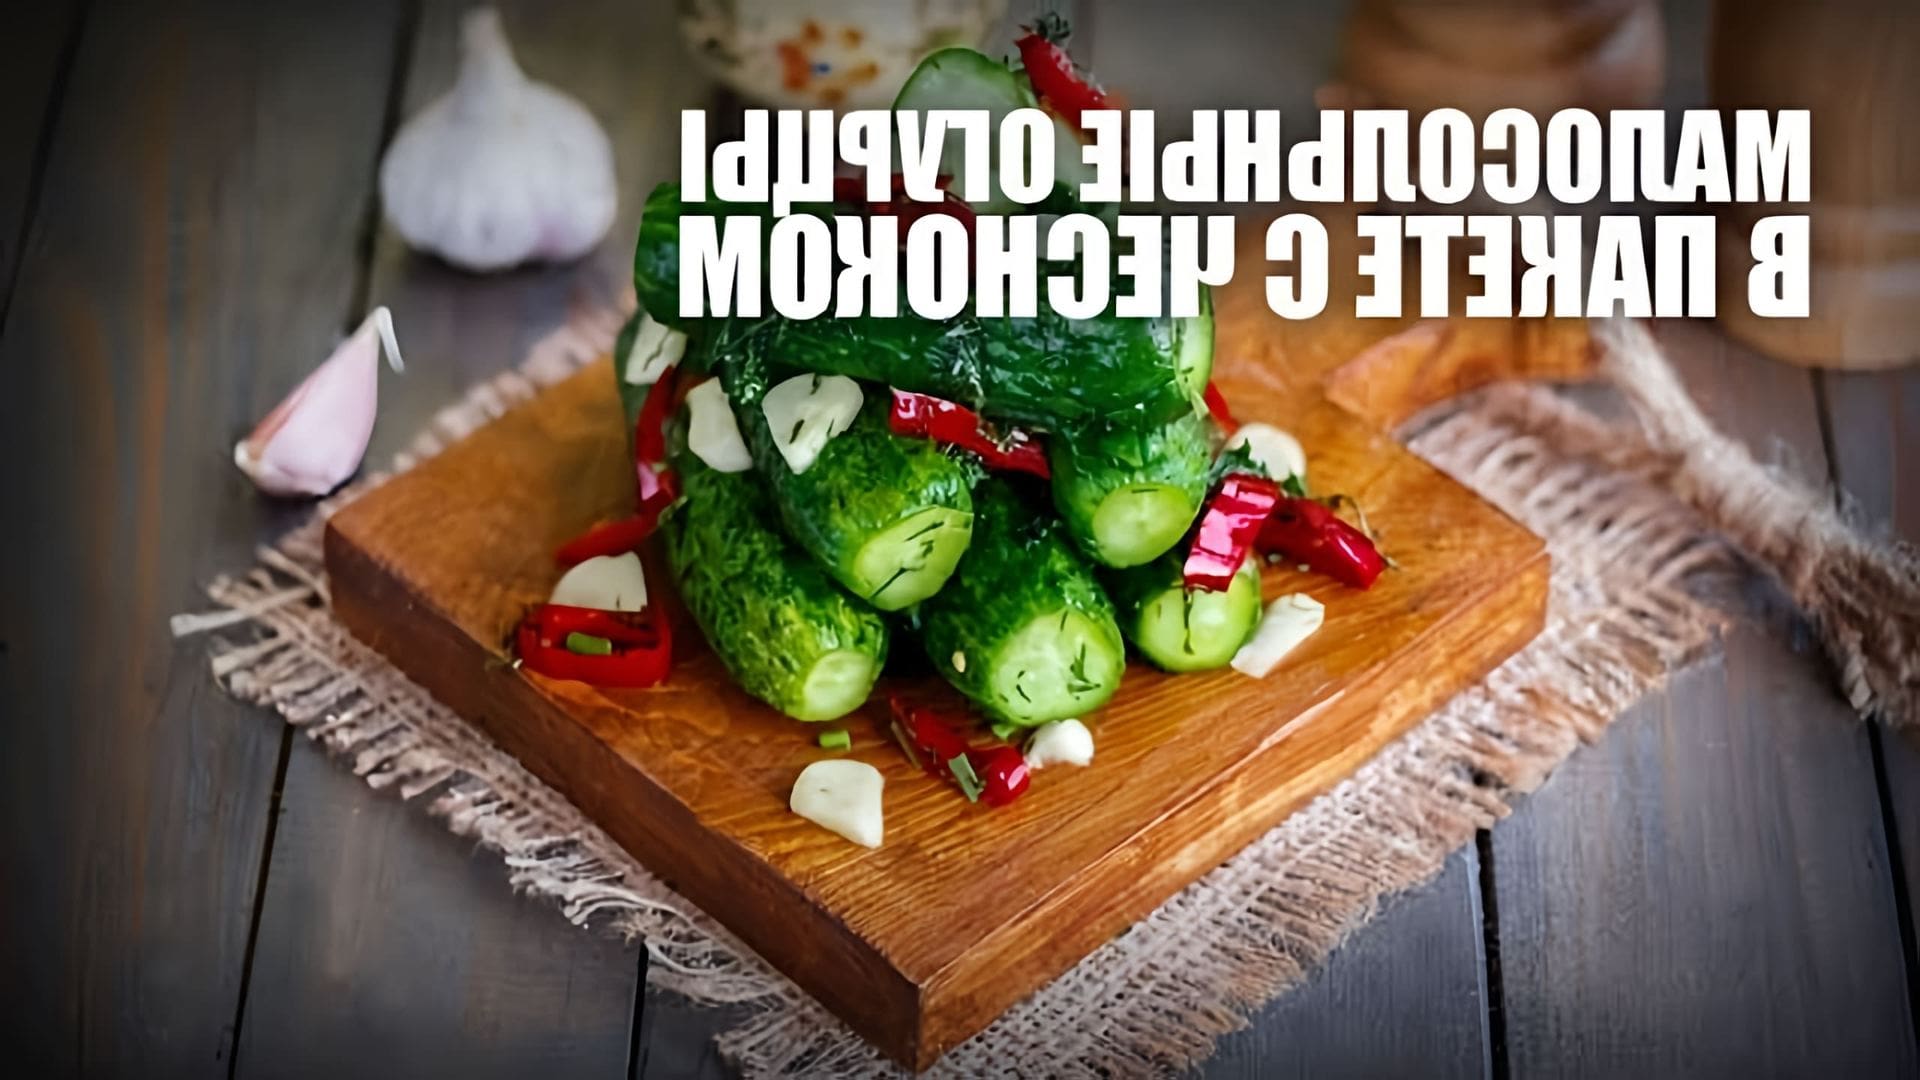 В этом видео демонстрируется рецепт приготовления малосольных огурцов в пакете с чесноком